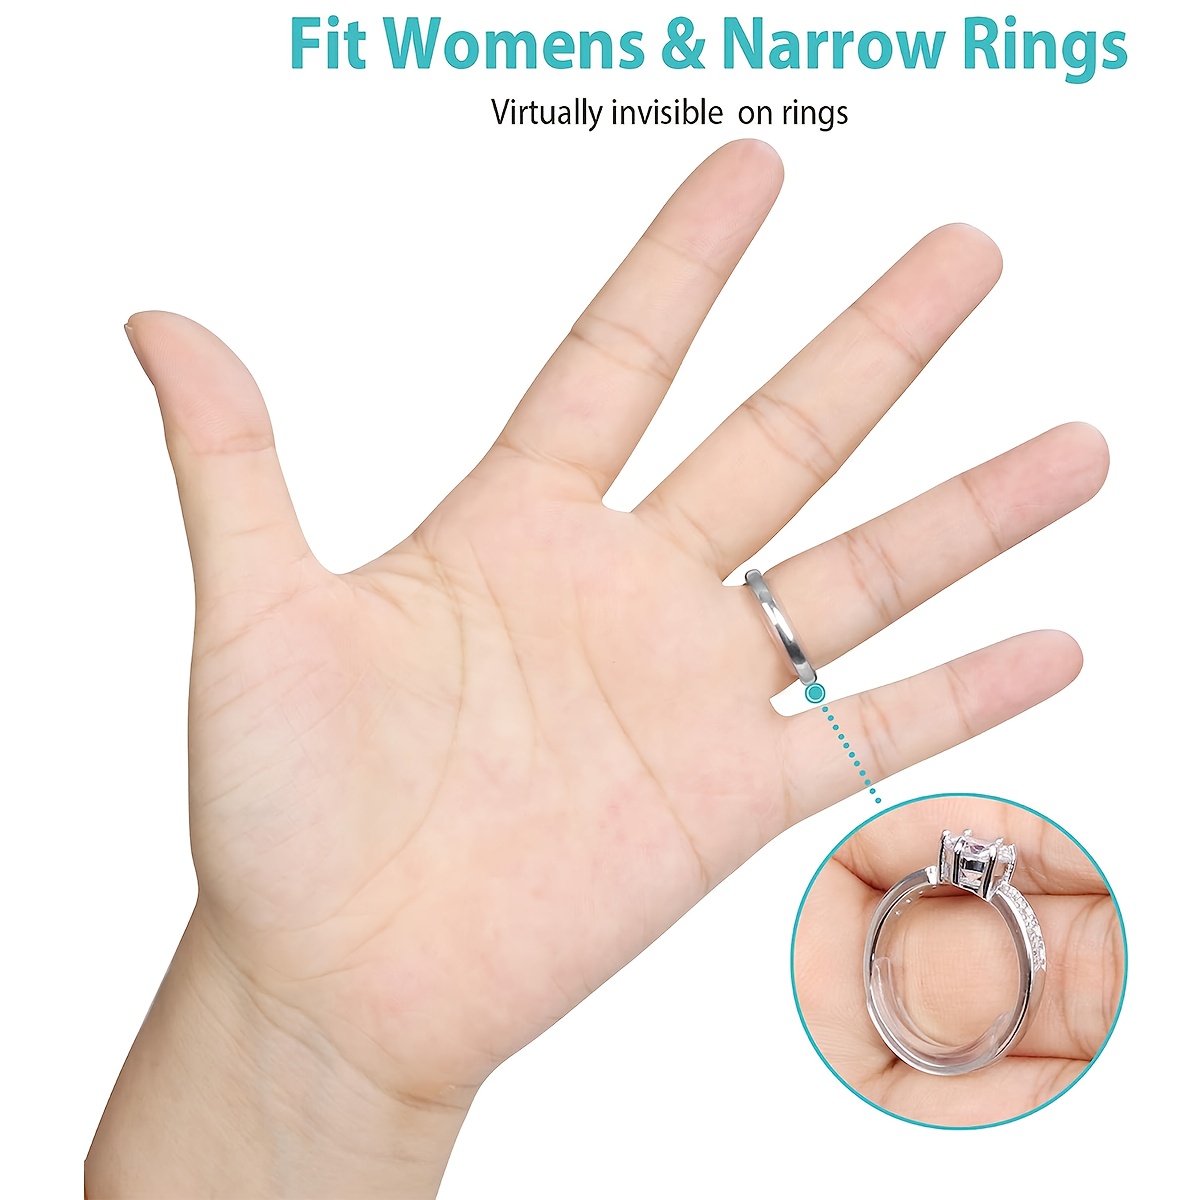  Ajustador de tamaño de anillo invisible para anillos